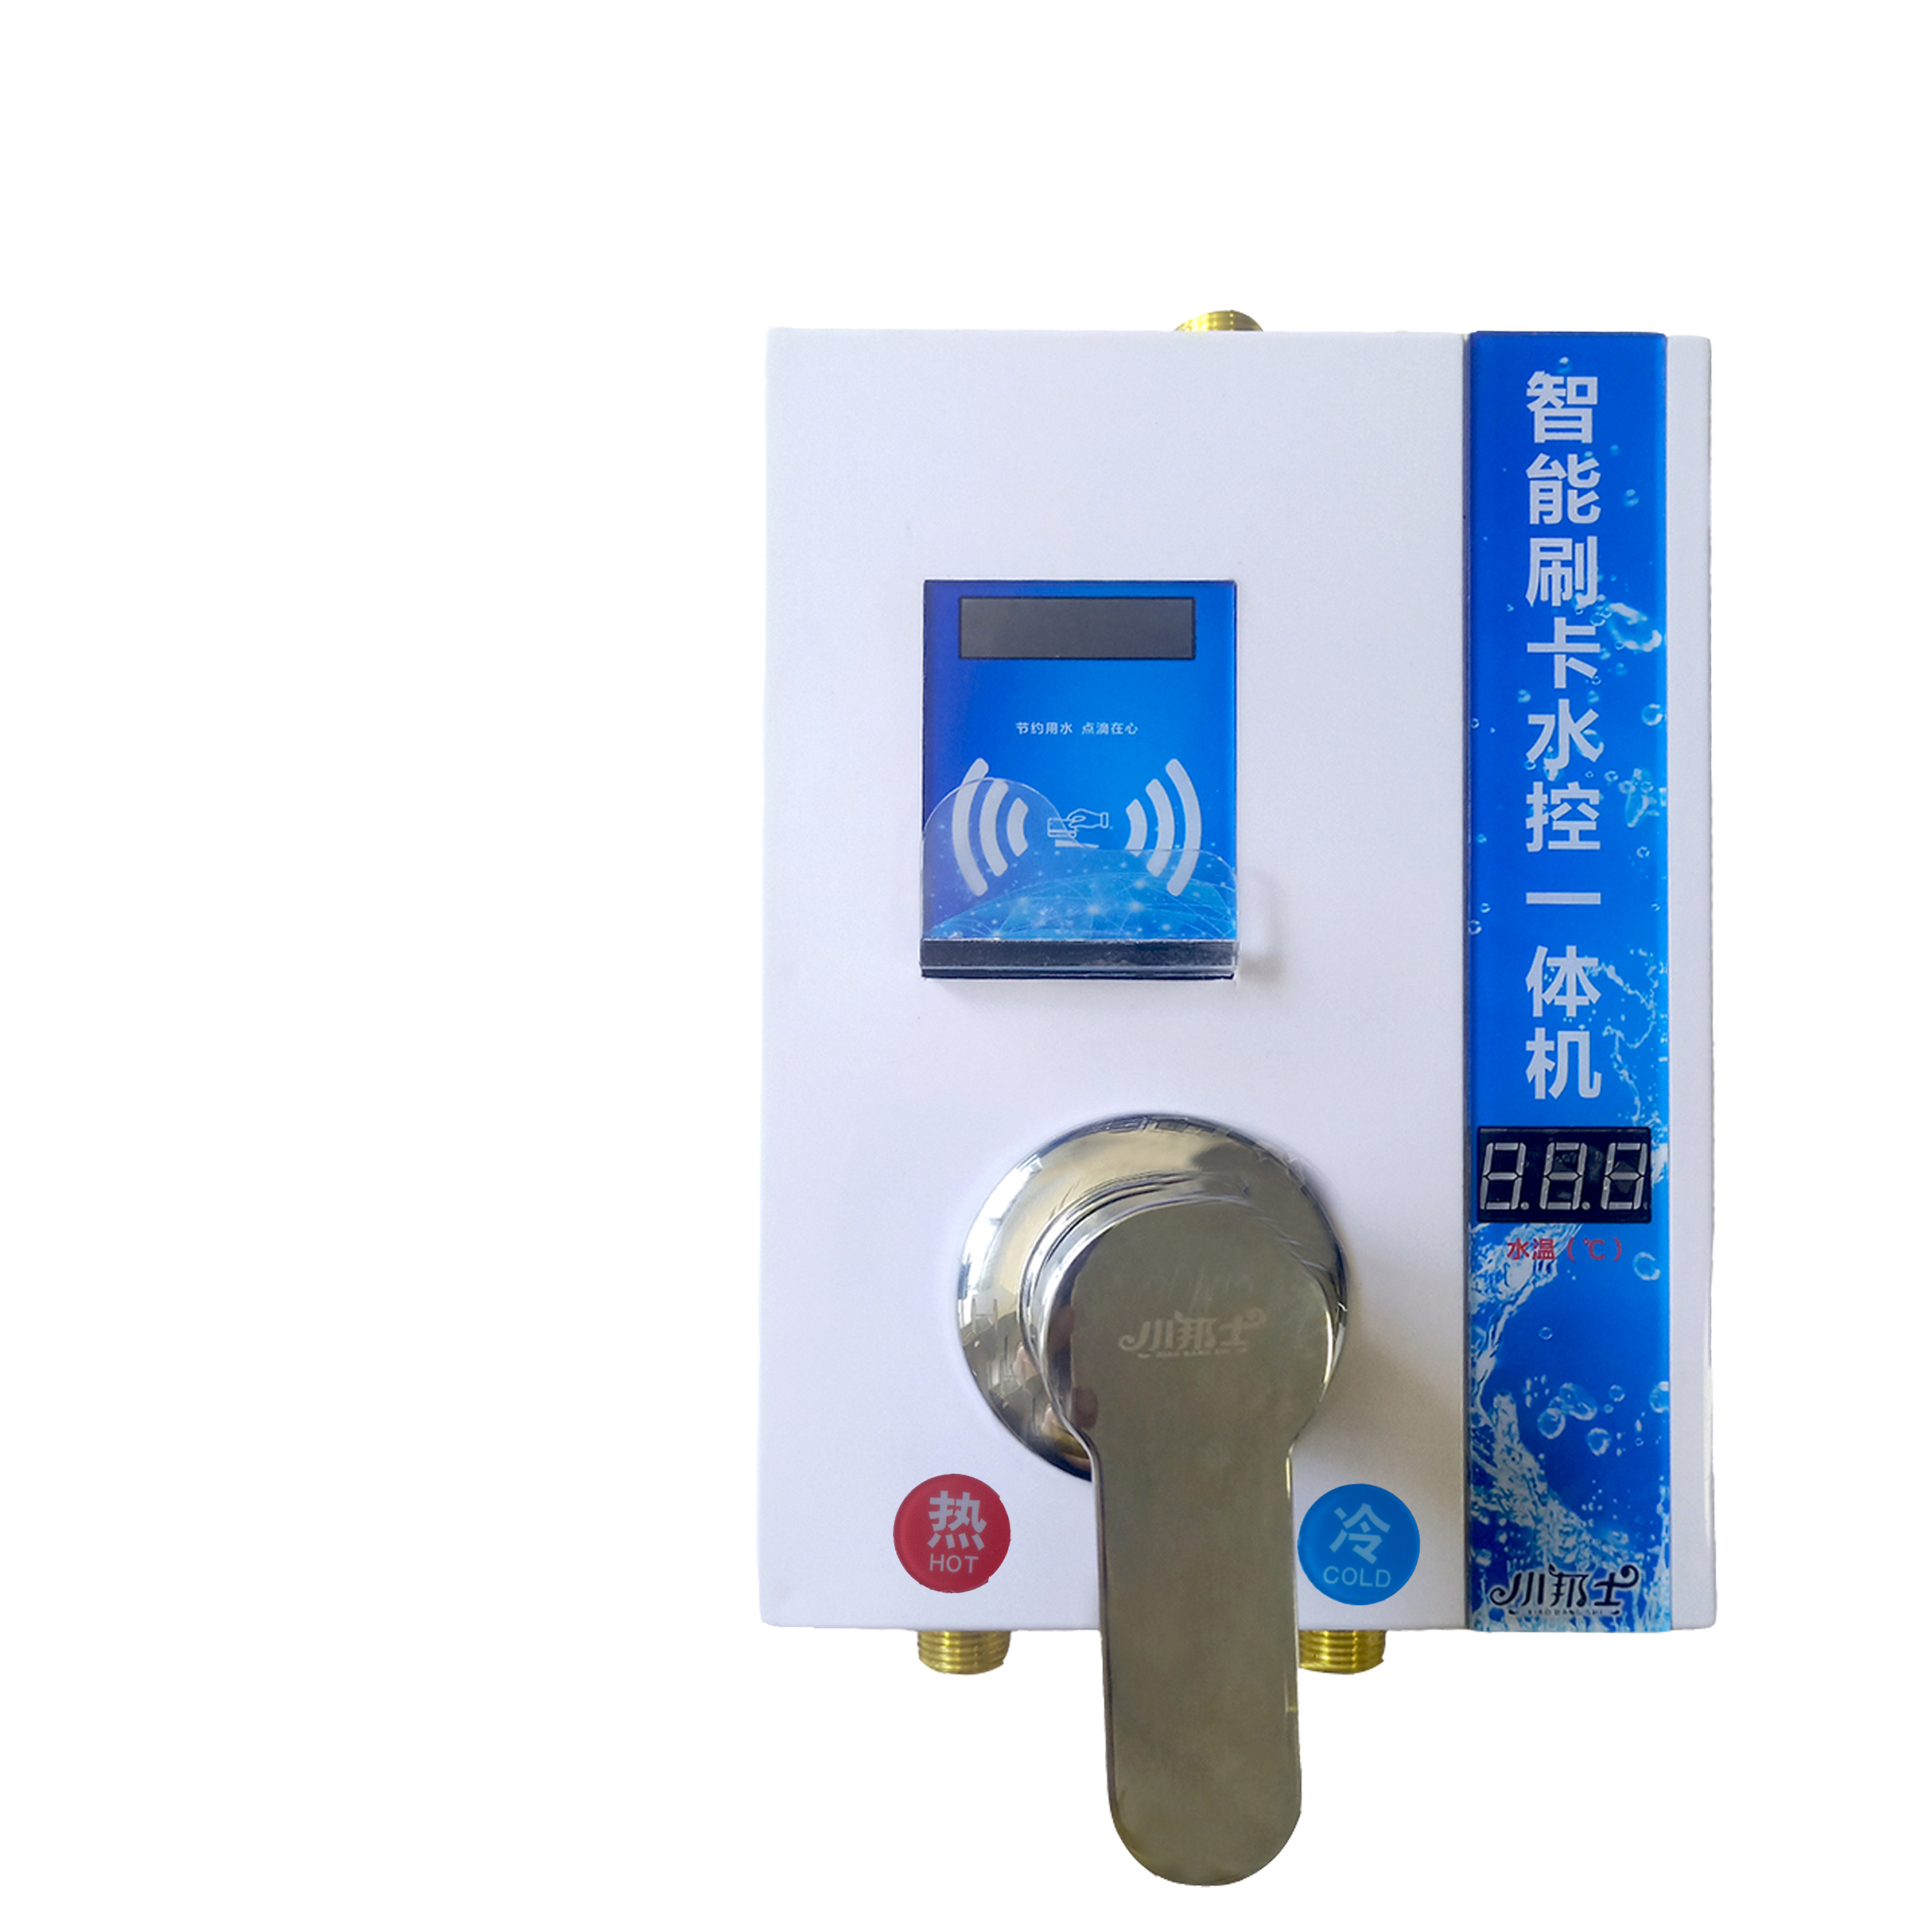 小邦士IC卡控水器系统JS-YT01  浴室刷卡节约用水专用